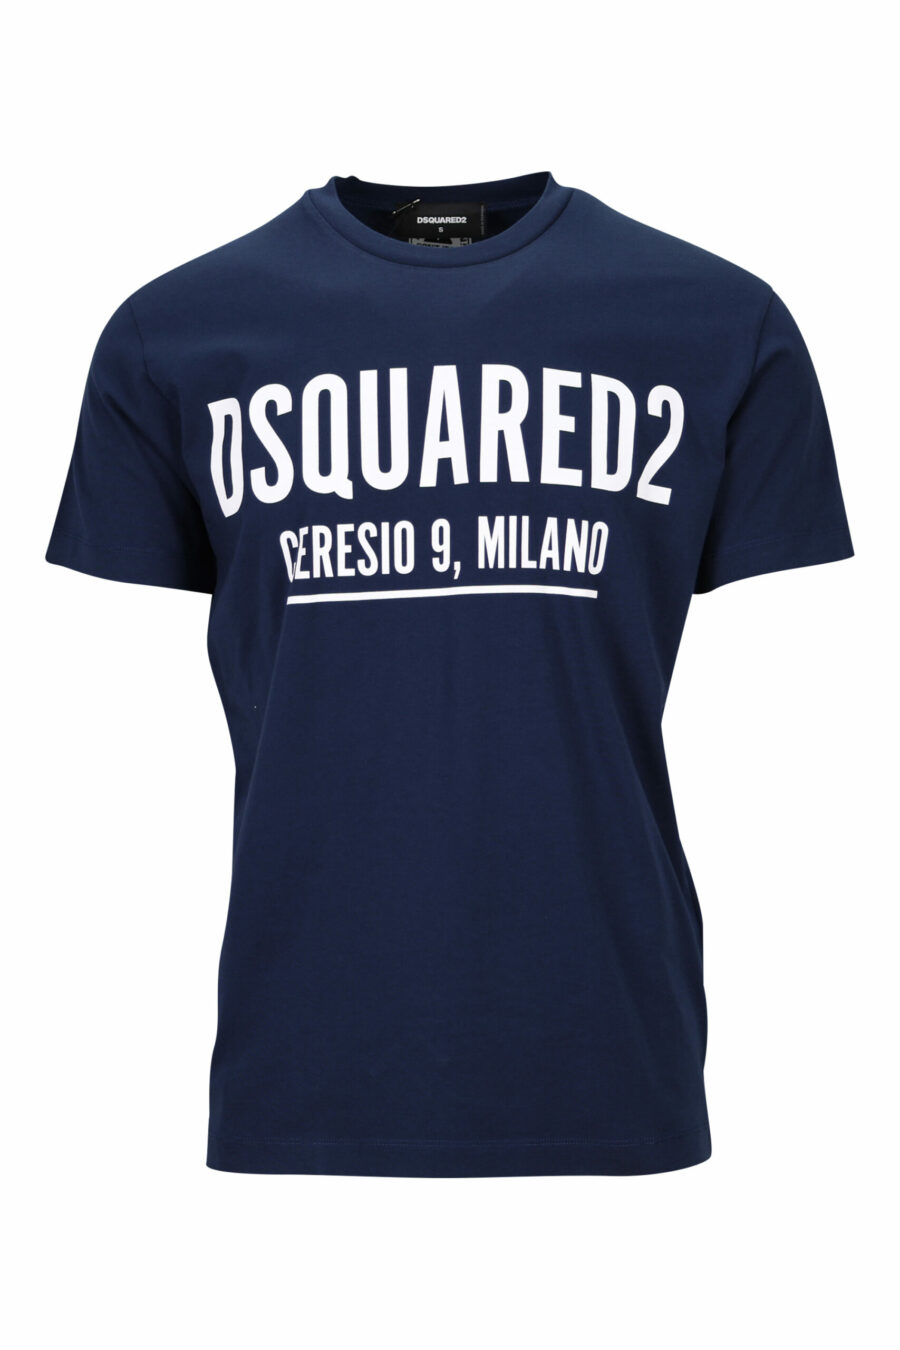 T-shirt bleu foncé avec maxilogo "ceresio 9, milano" - 8054148504915 scaled